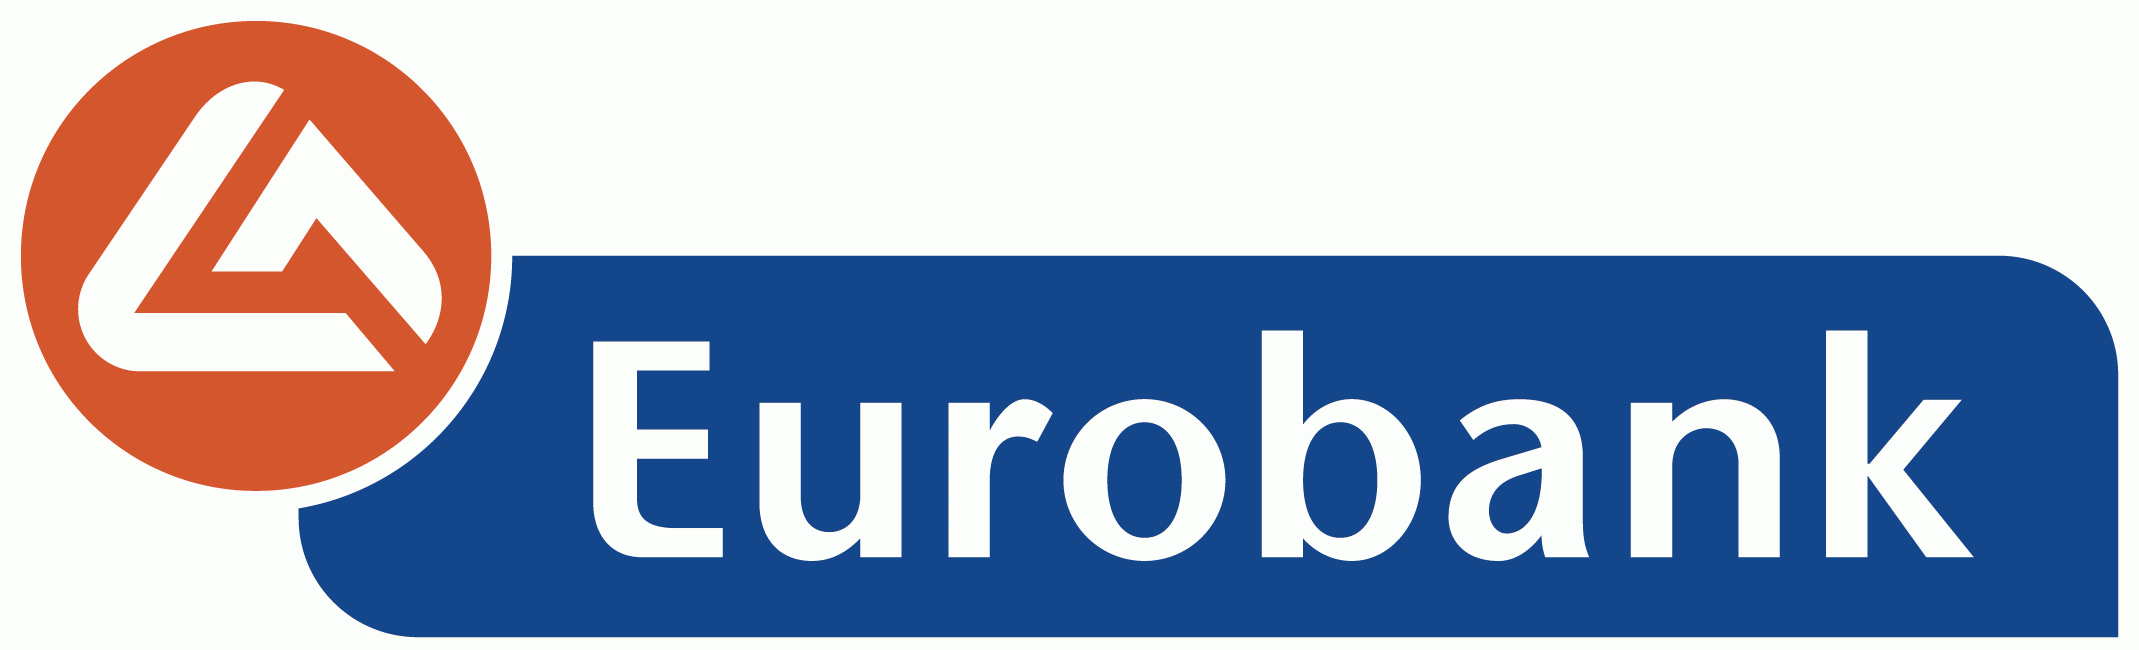 заграничный банк Евробанк